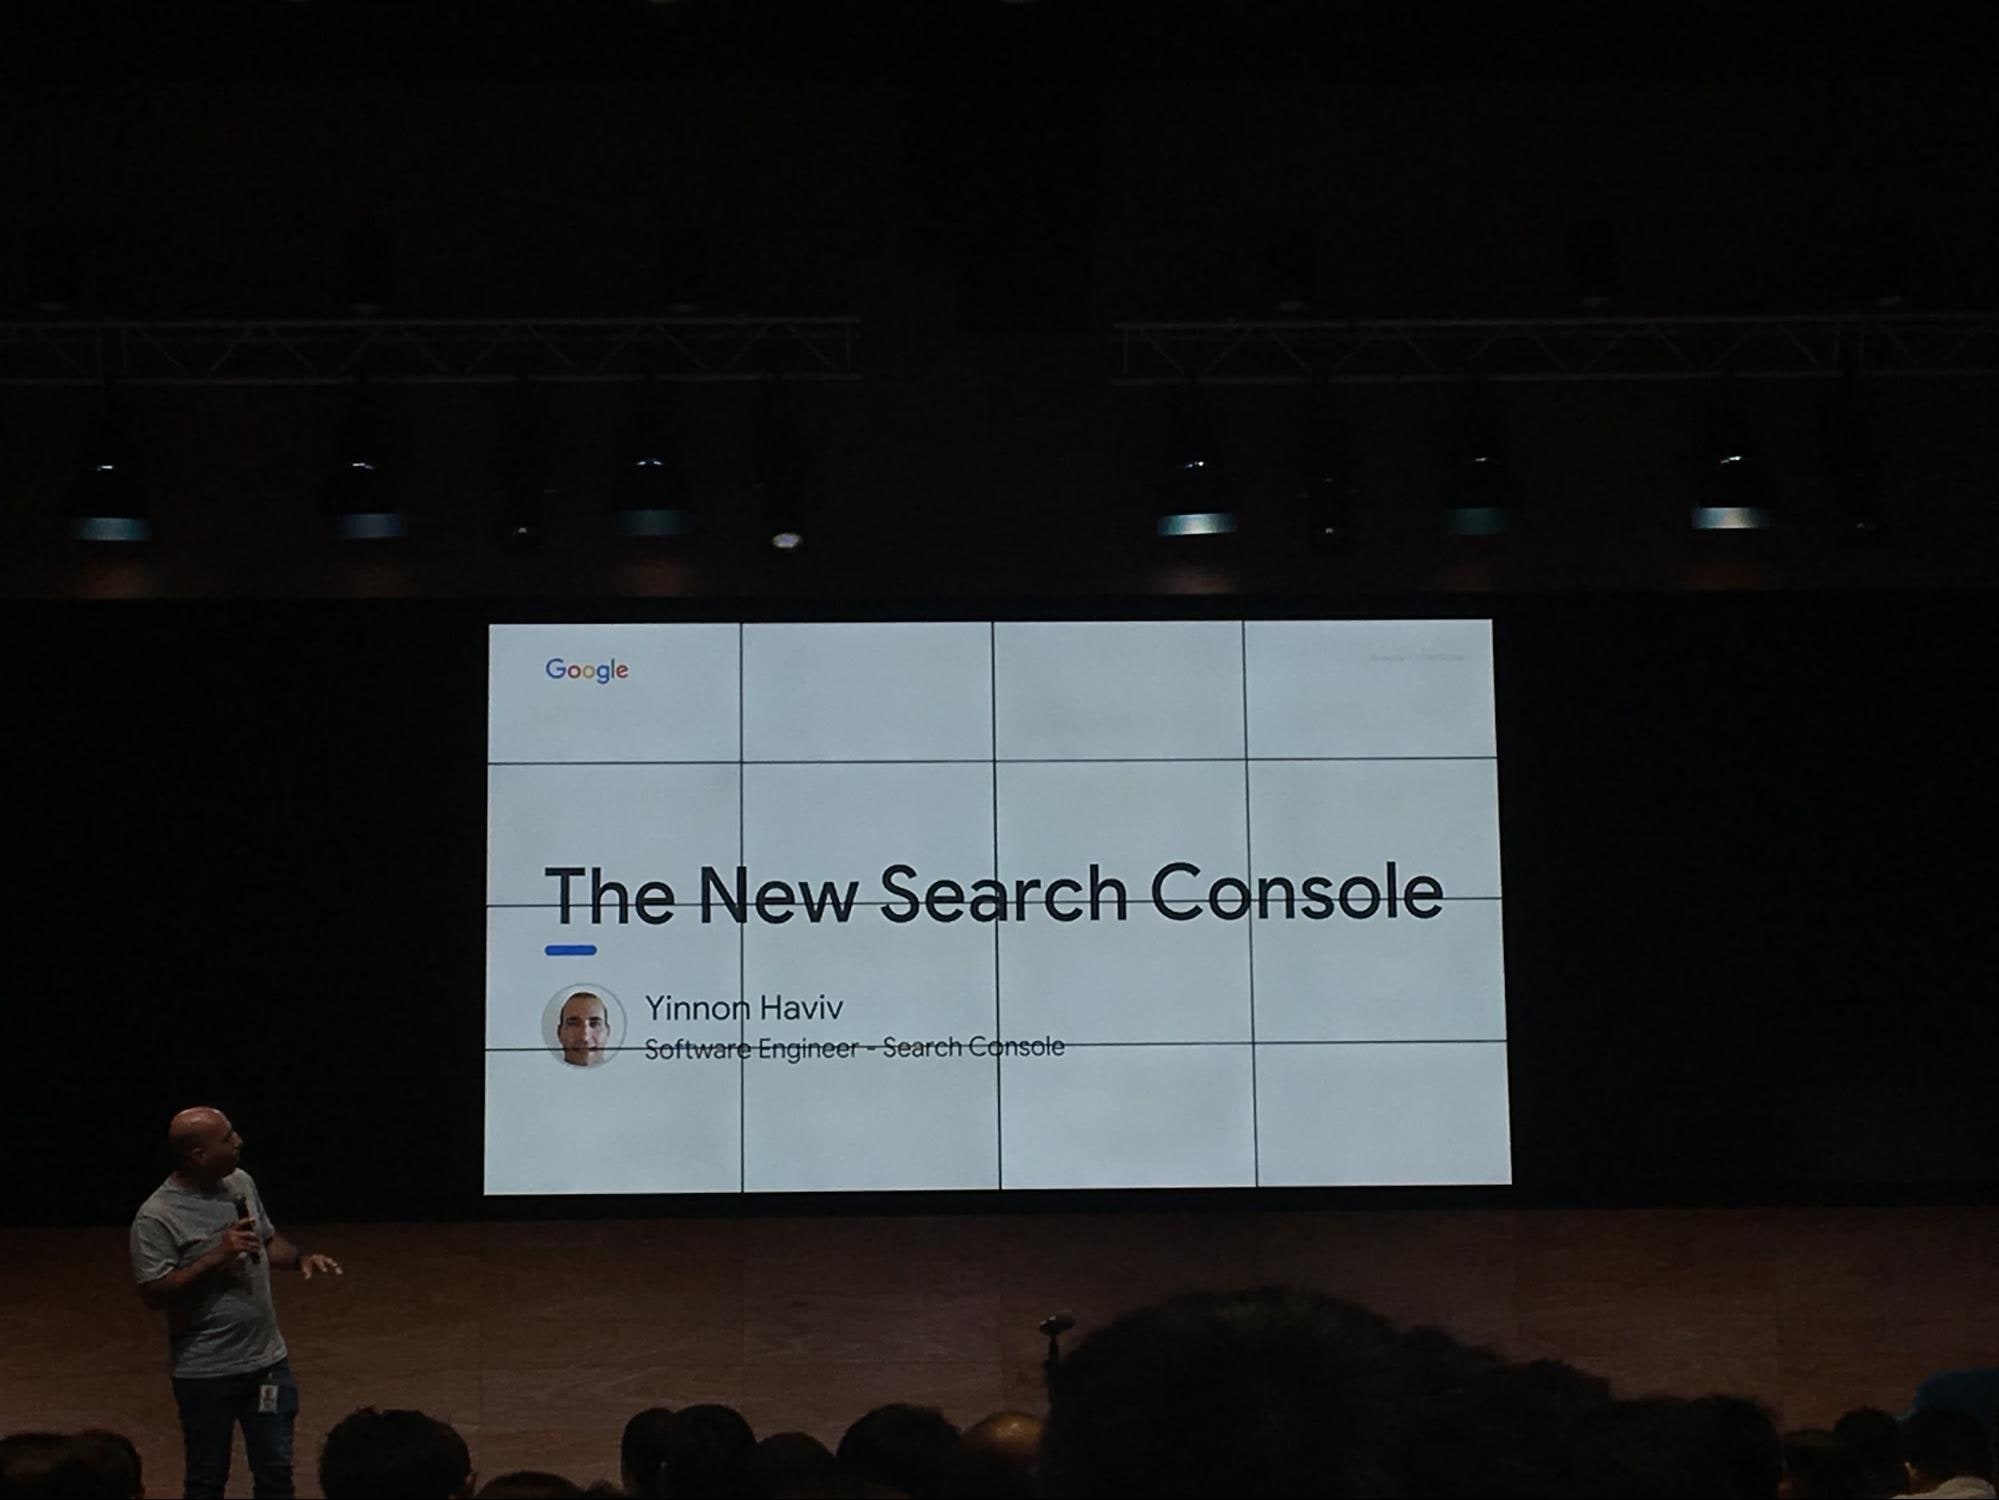 new google search console